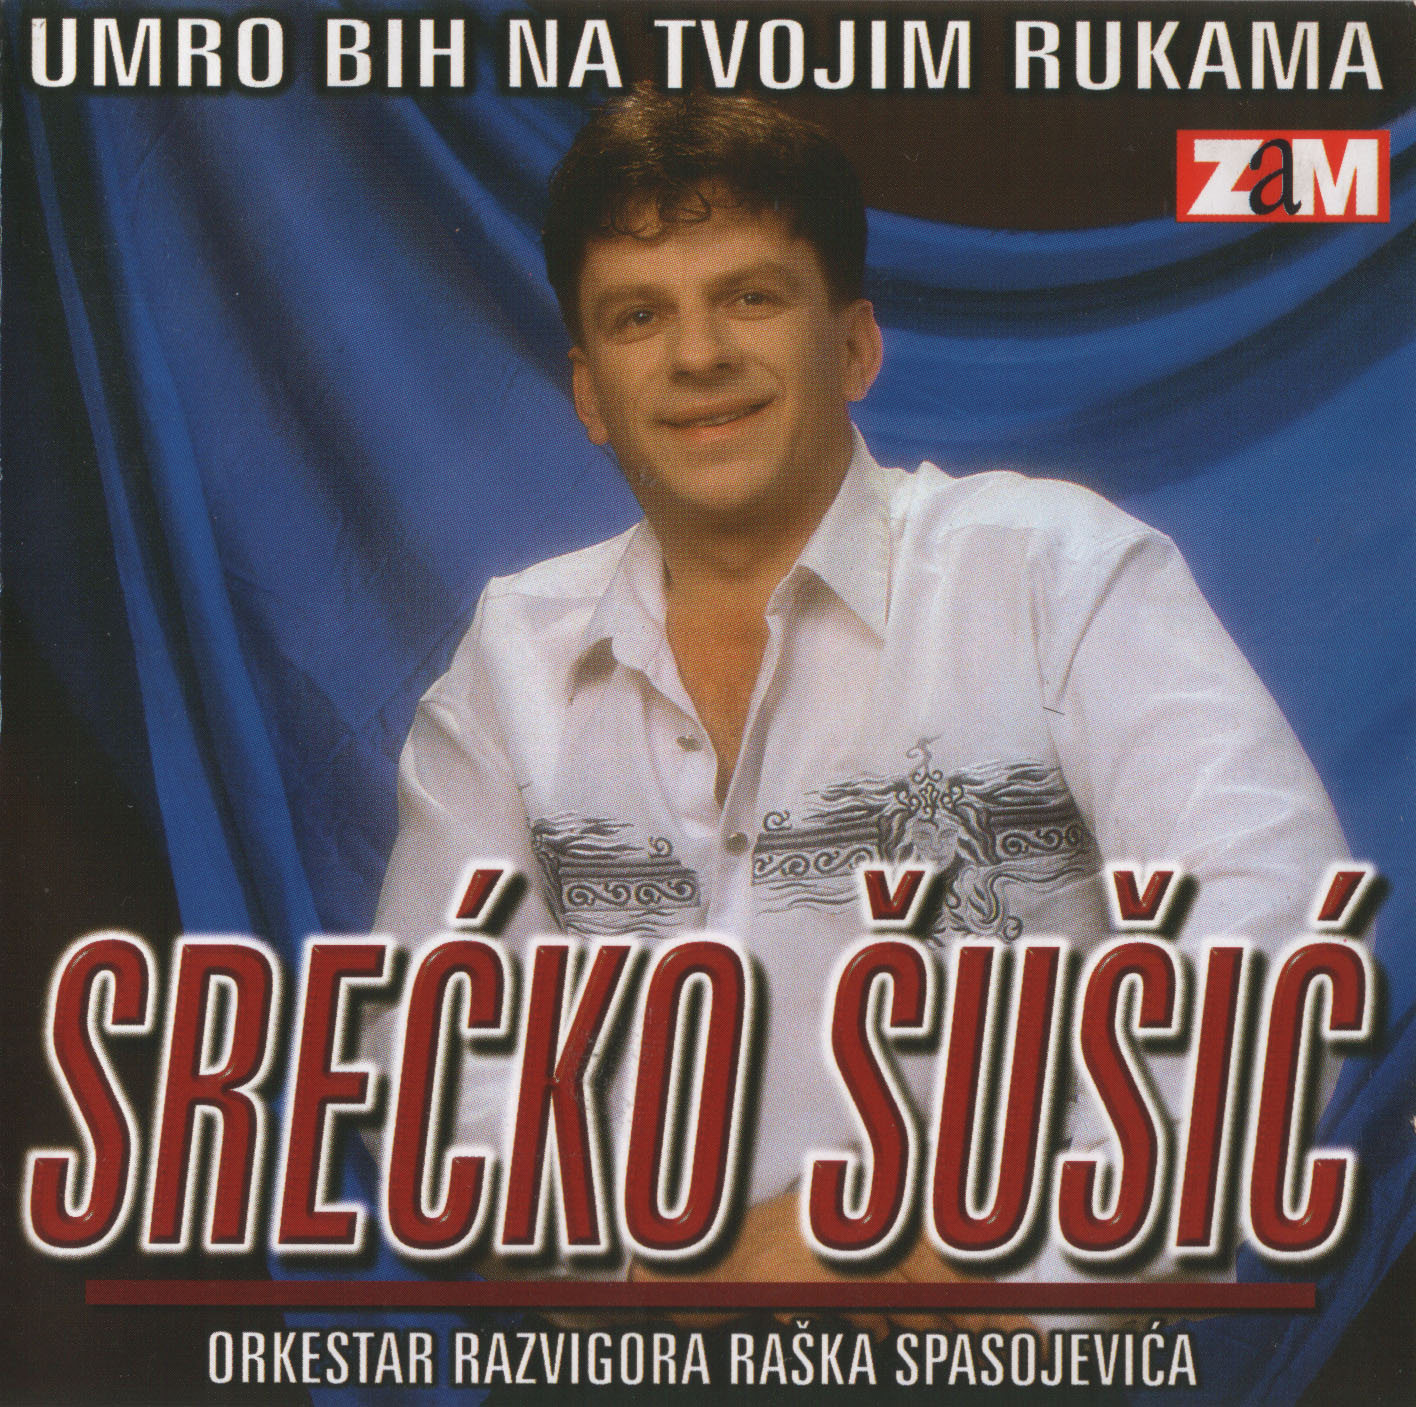 Srecko Susic 1999 Prednja 1